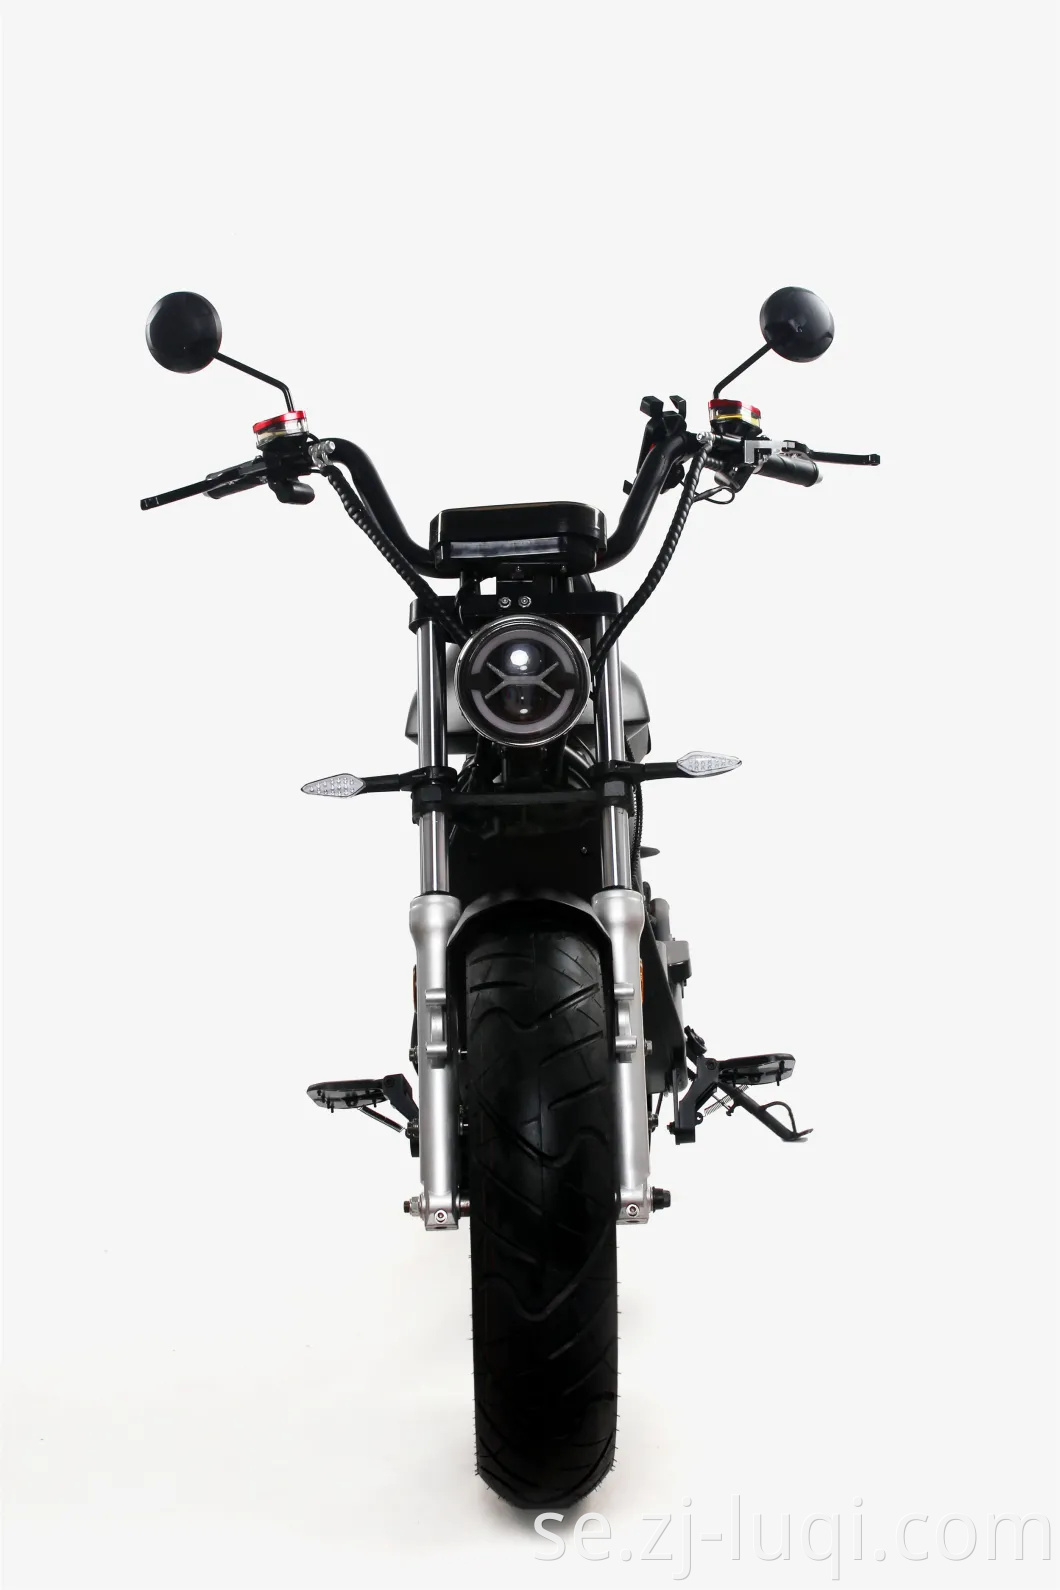 Italien klassisk stil Vespa Electric Scooter 60V / 20Ah / 30Ah Litium 2000W elektrisk motorcykel med EEG